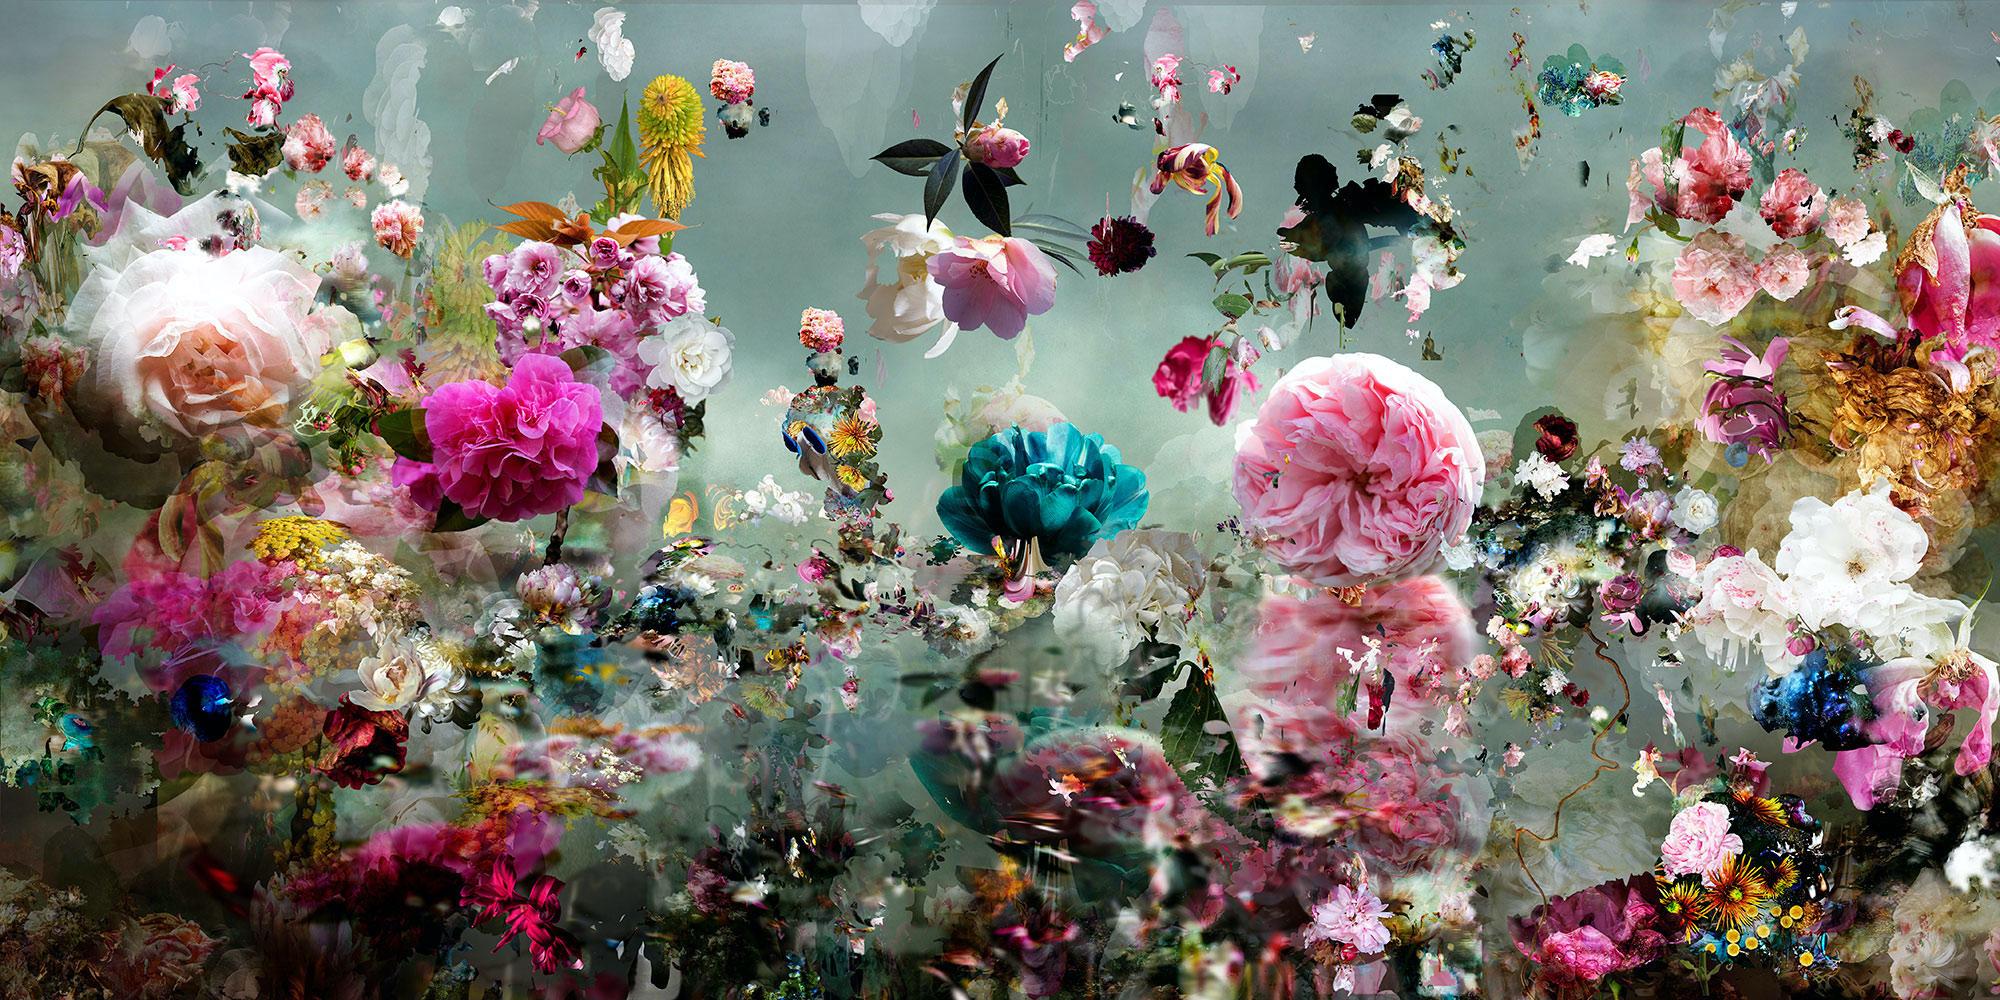 Still-Life Photograph Isabelle Menin - ALJ n° 7 - Photographie de natures mortes florales abstraites contemporaines en couleur